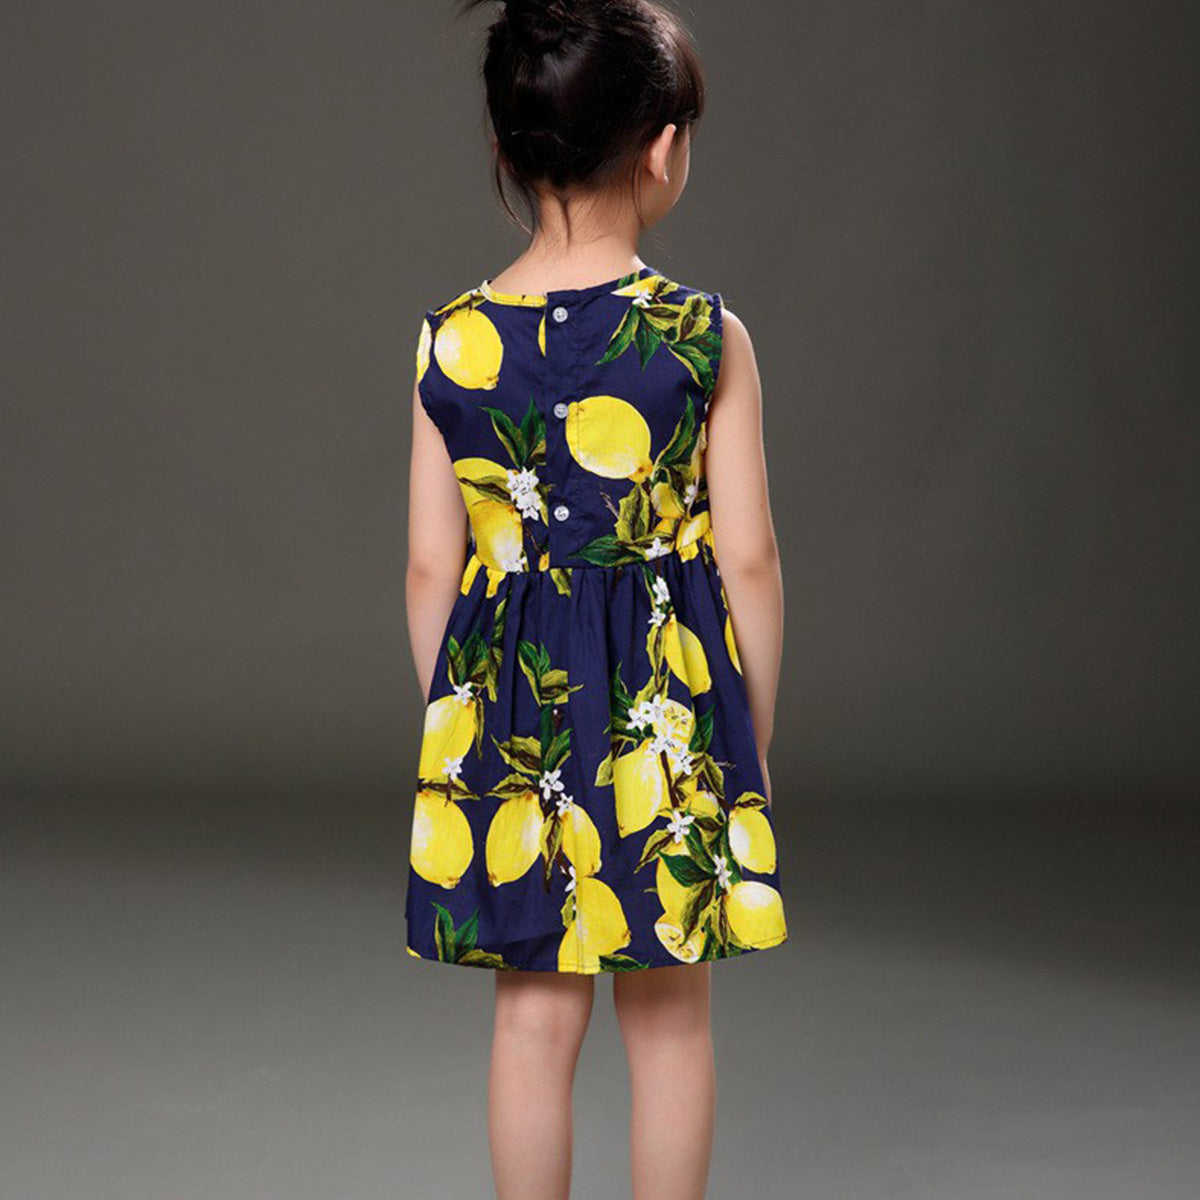 BabyGirl's Stylish Cotton Black Floral Multicolor Frocks & Dresses for Kids.